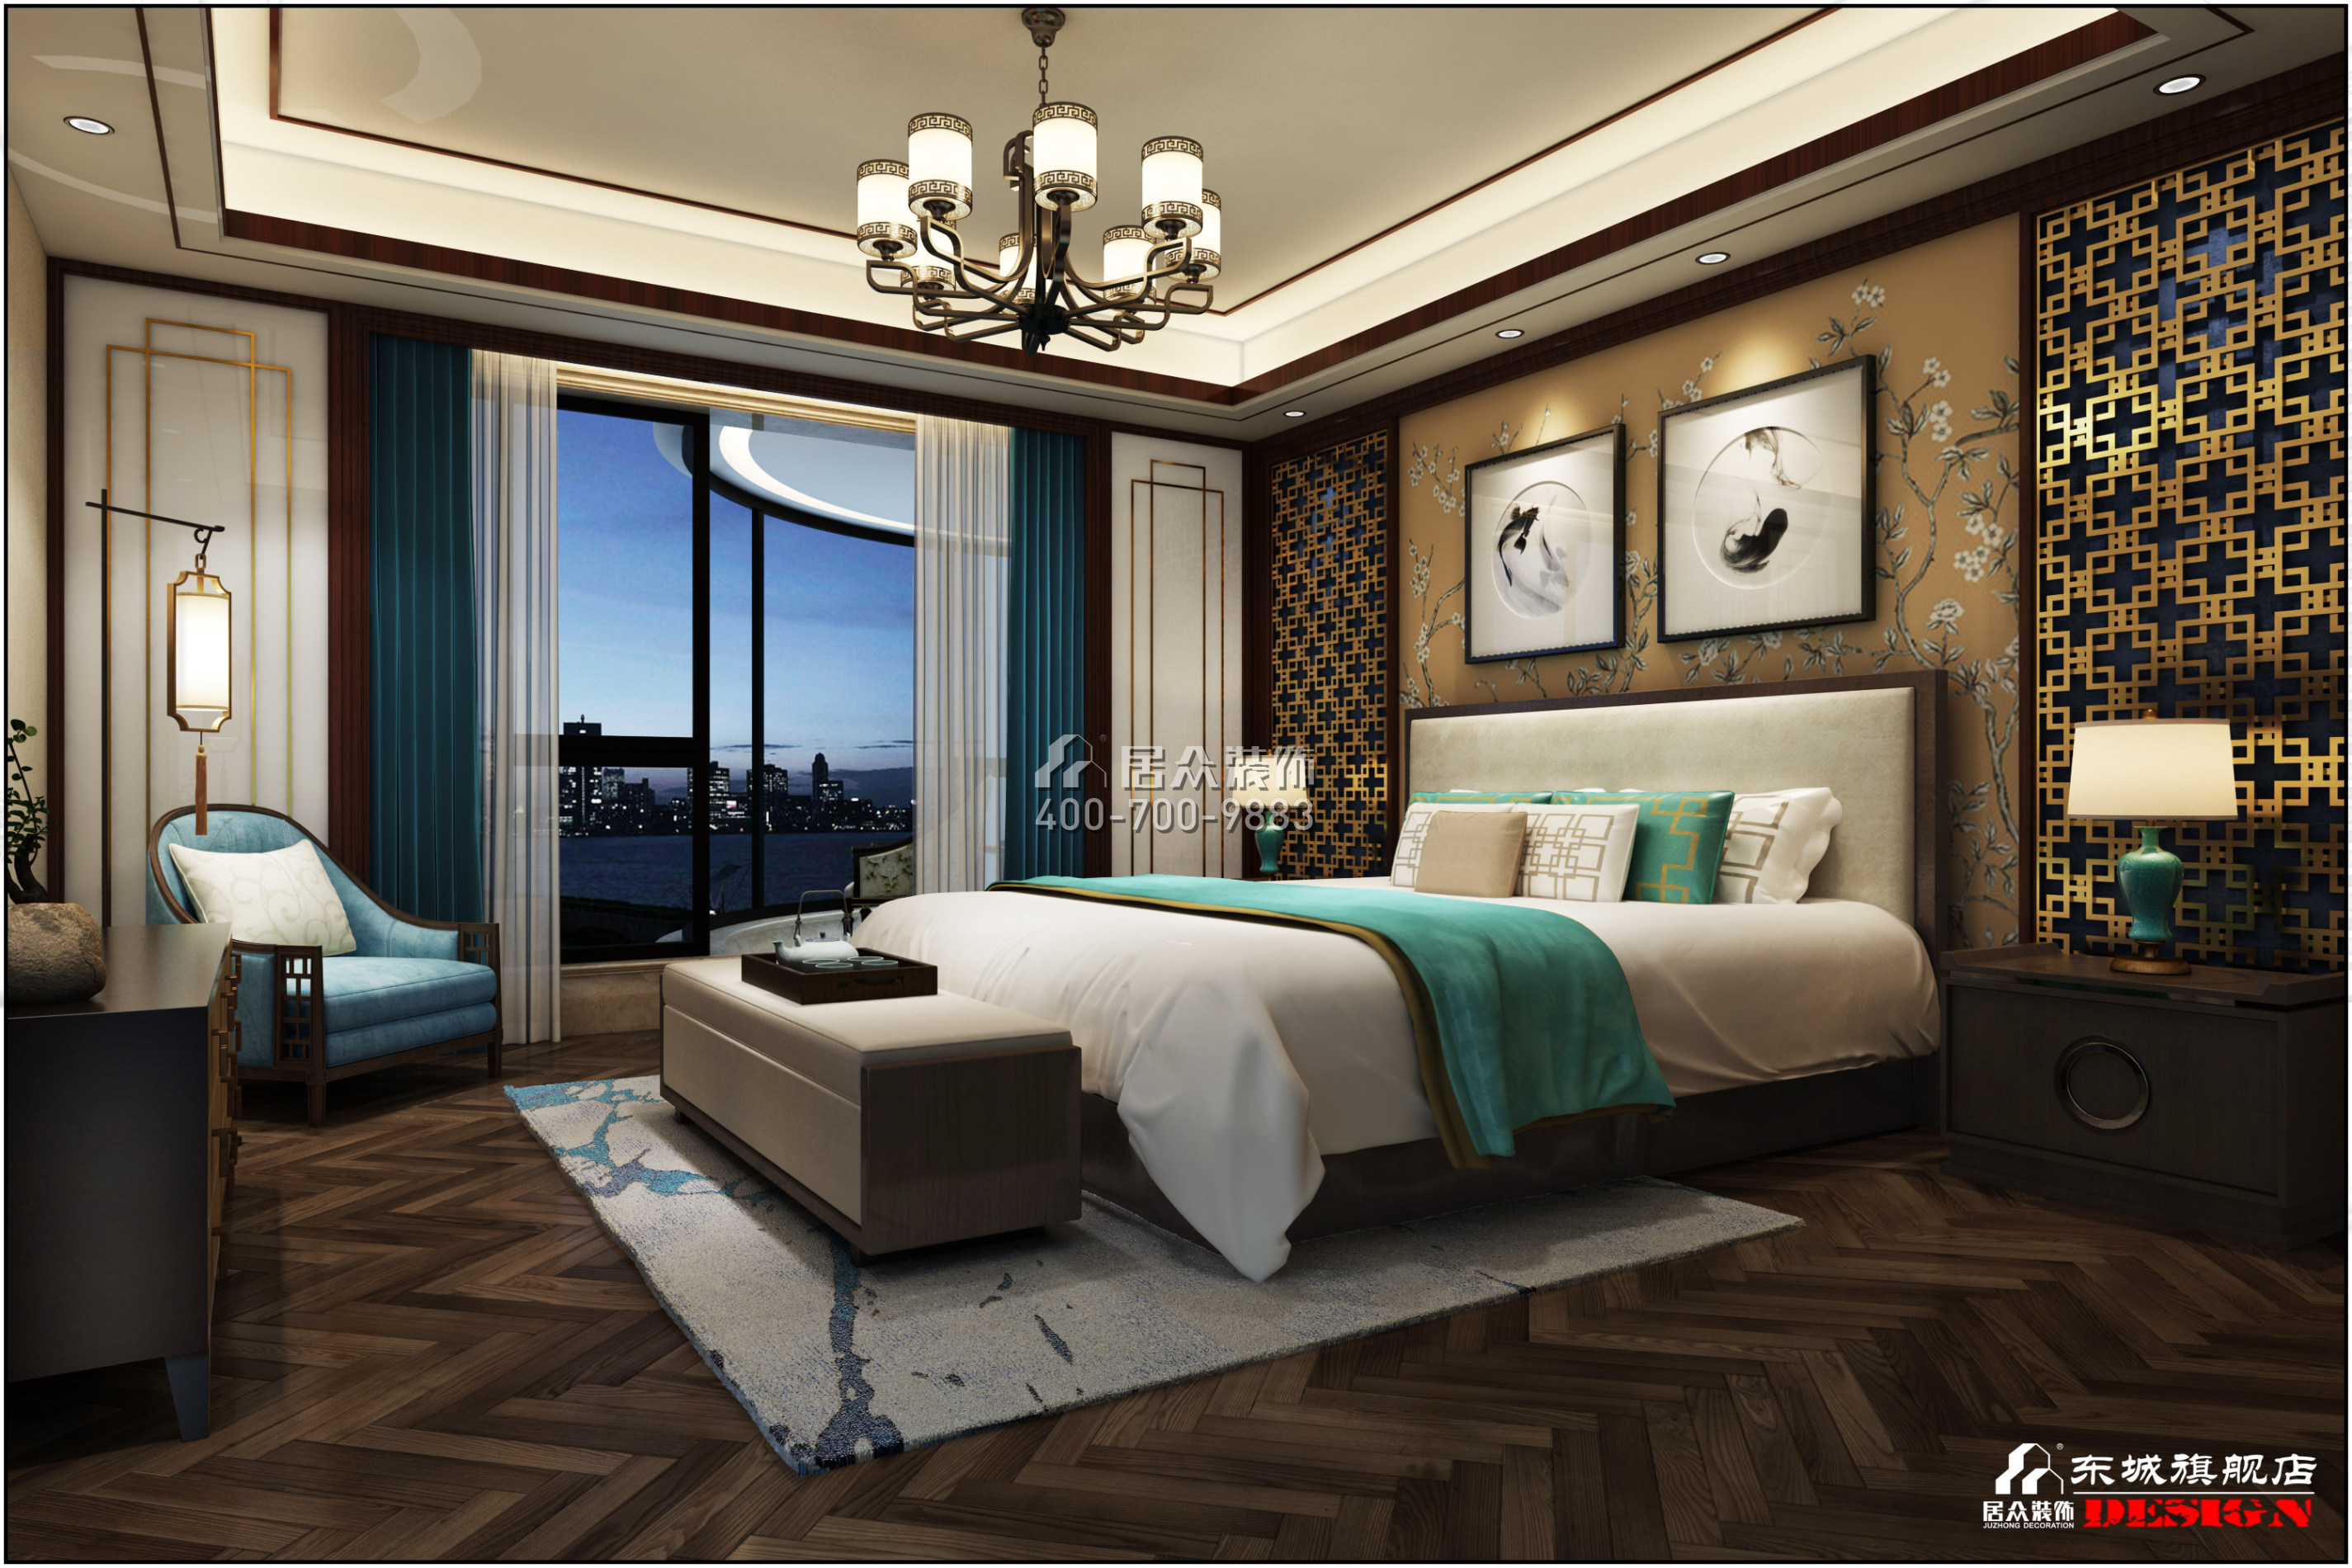 湘域熙岸303平方米中式風格平層戶型臥室裝修效果圖